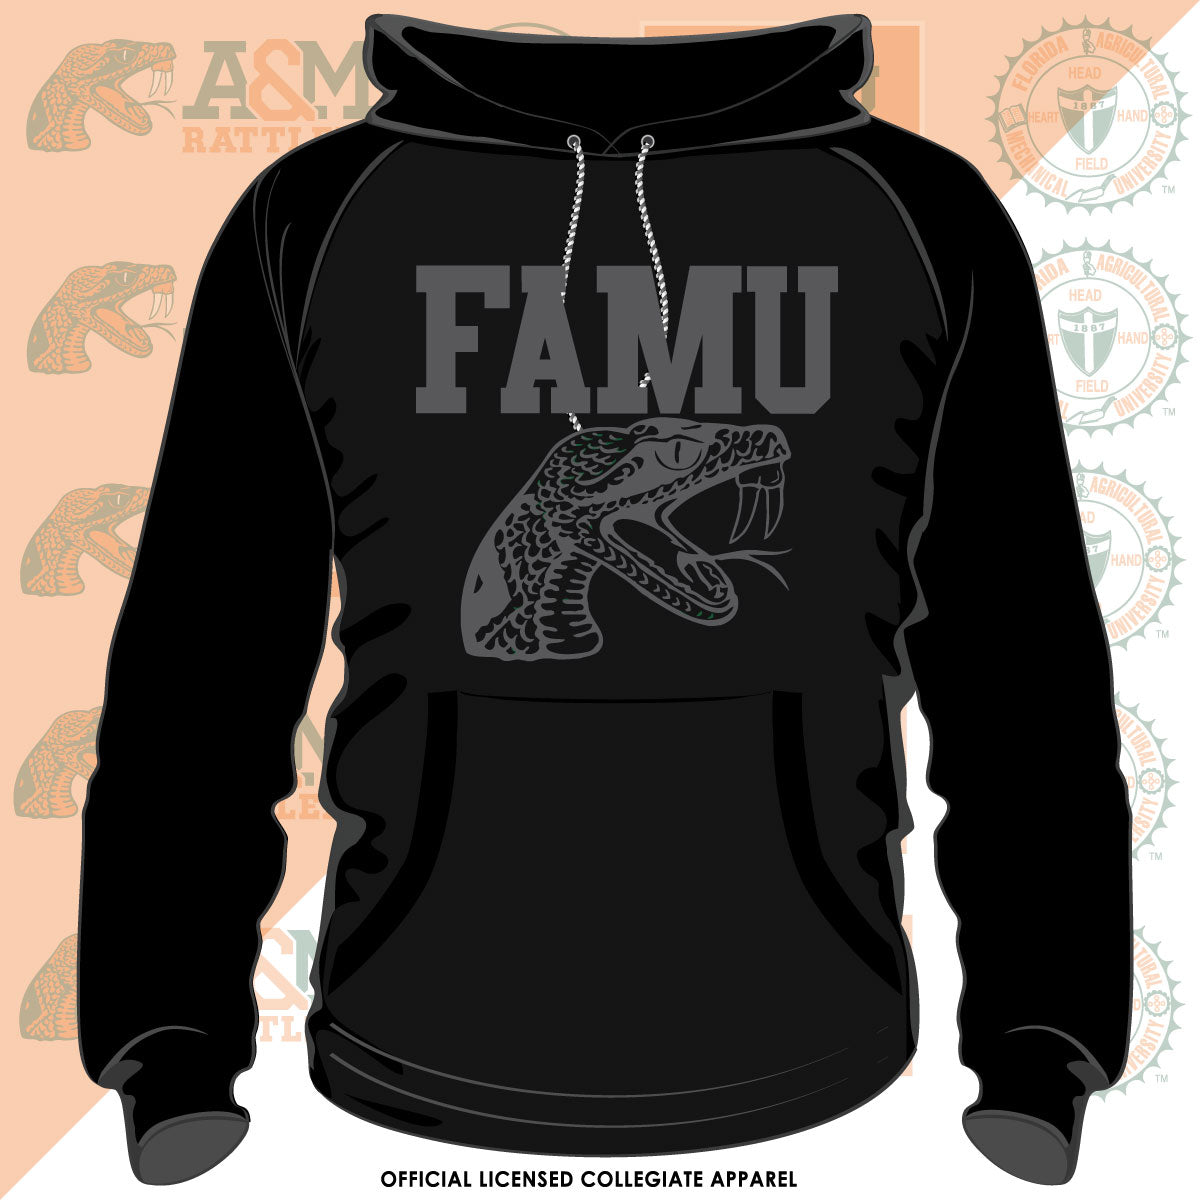 FAMU | Celebrate BHM | 3D Puff Ink Black Unisex Hoodie